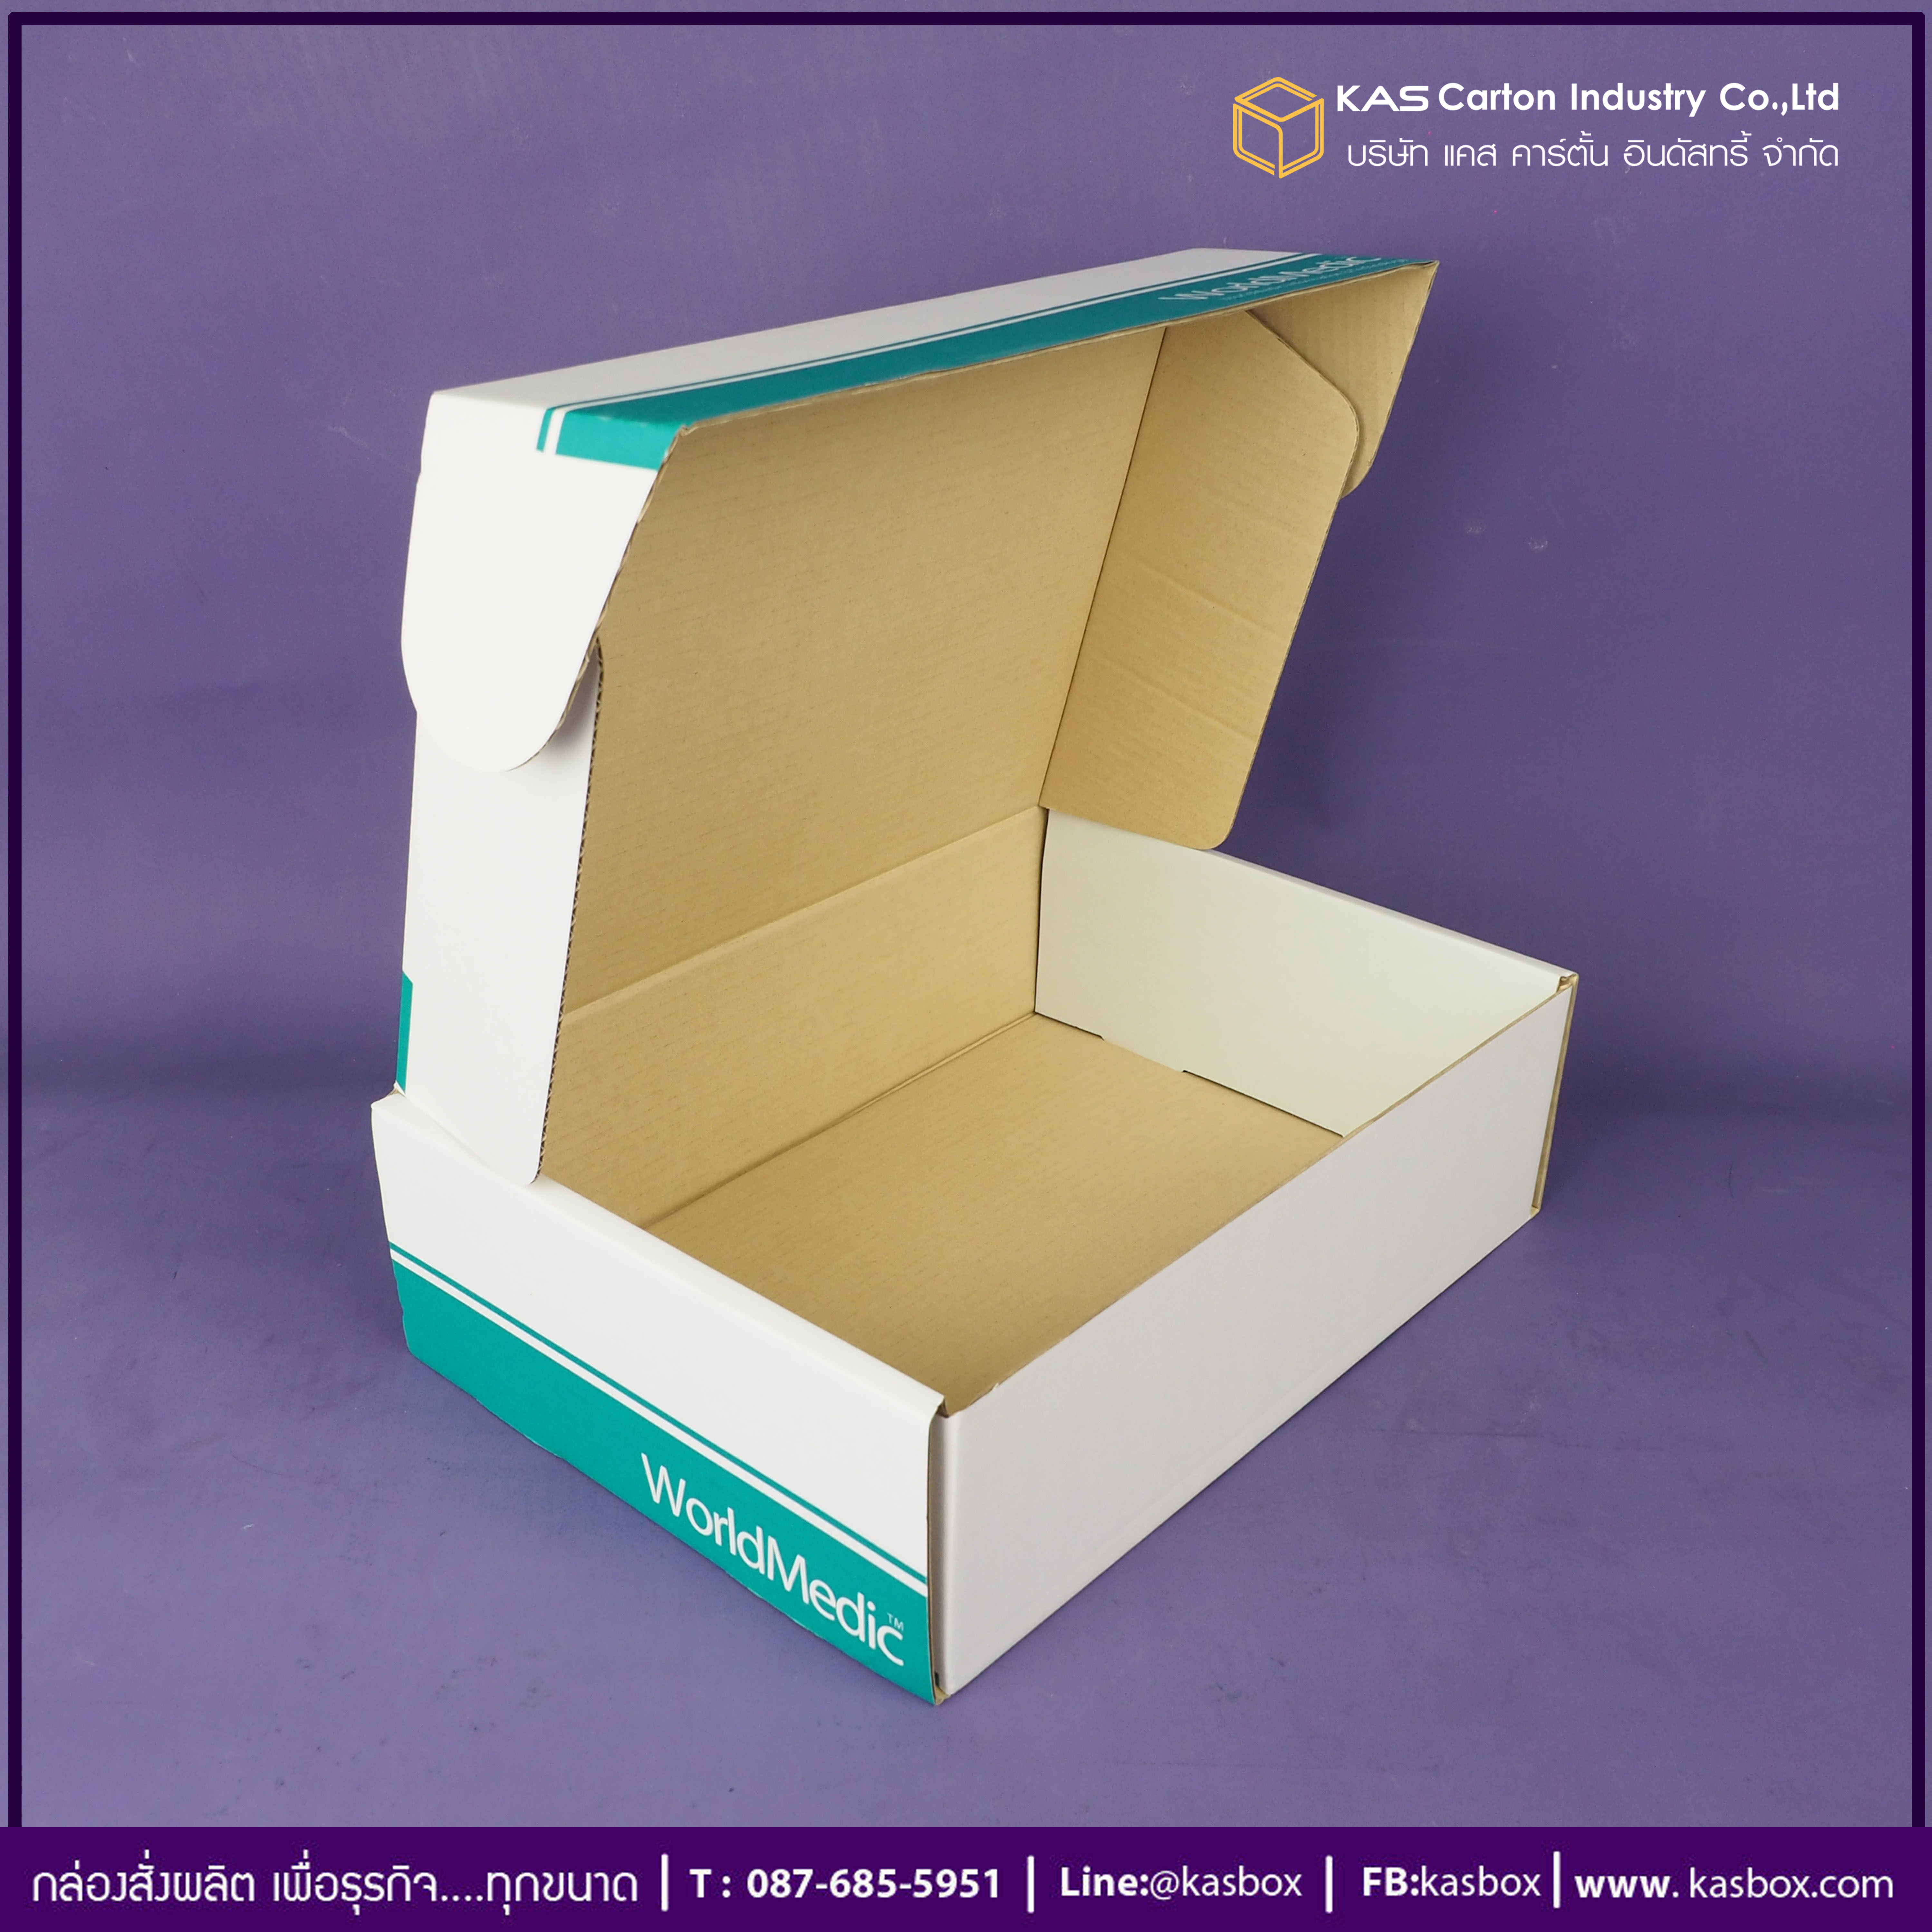 กล่องลูกฟูก สำเร็จรูป และ สั่งผลิต ตามความต้องการลูกค้า กล่องลูกฟูก SME กล่องกระดาษลูกฟูก สำหรับอุปกรณ์ทางการเเพทย์ World Medic